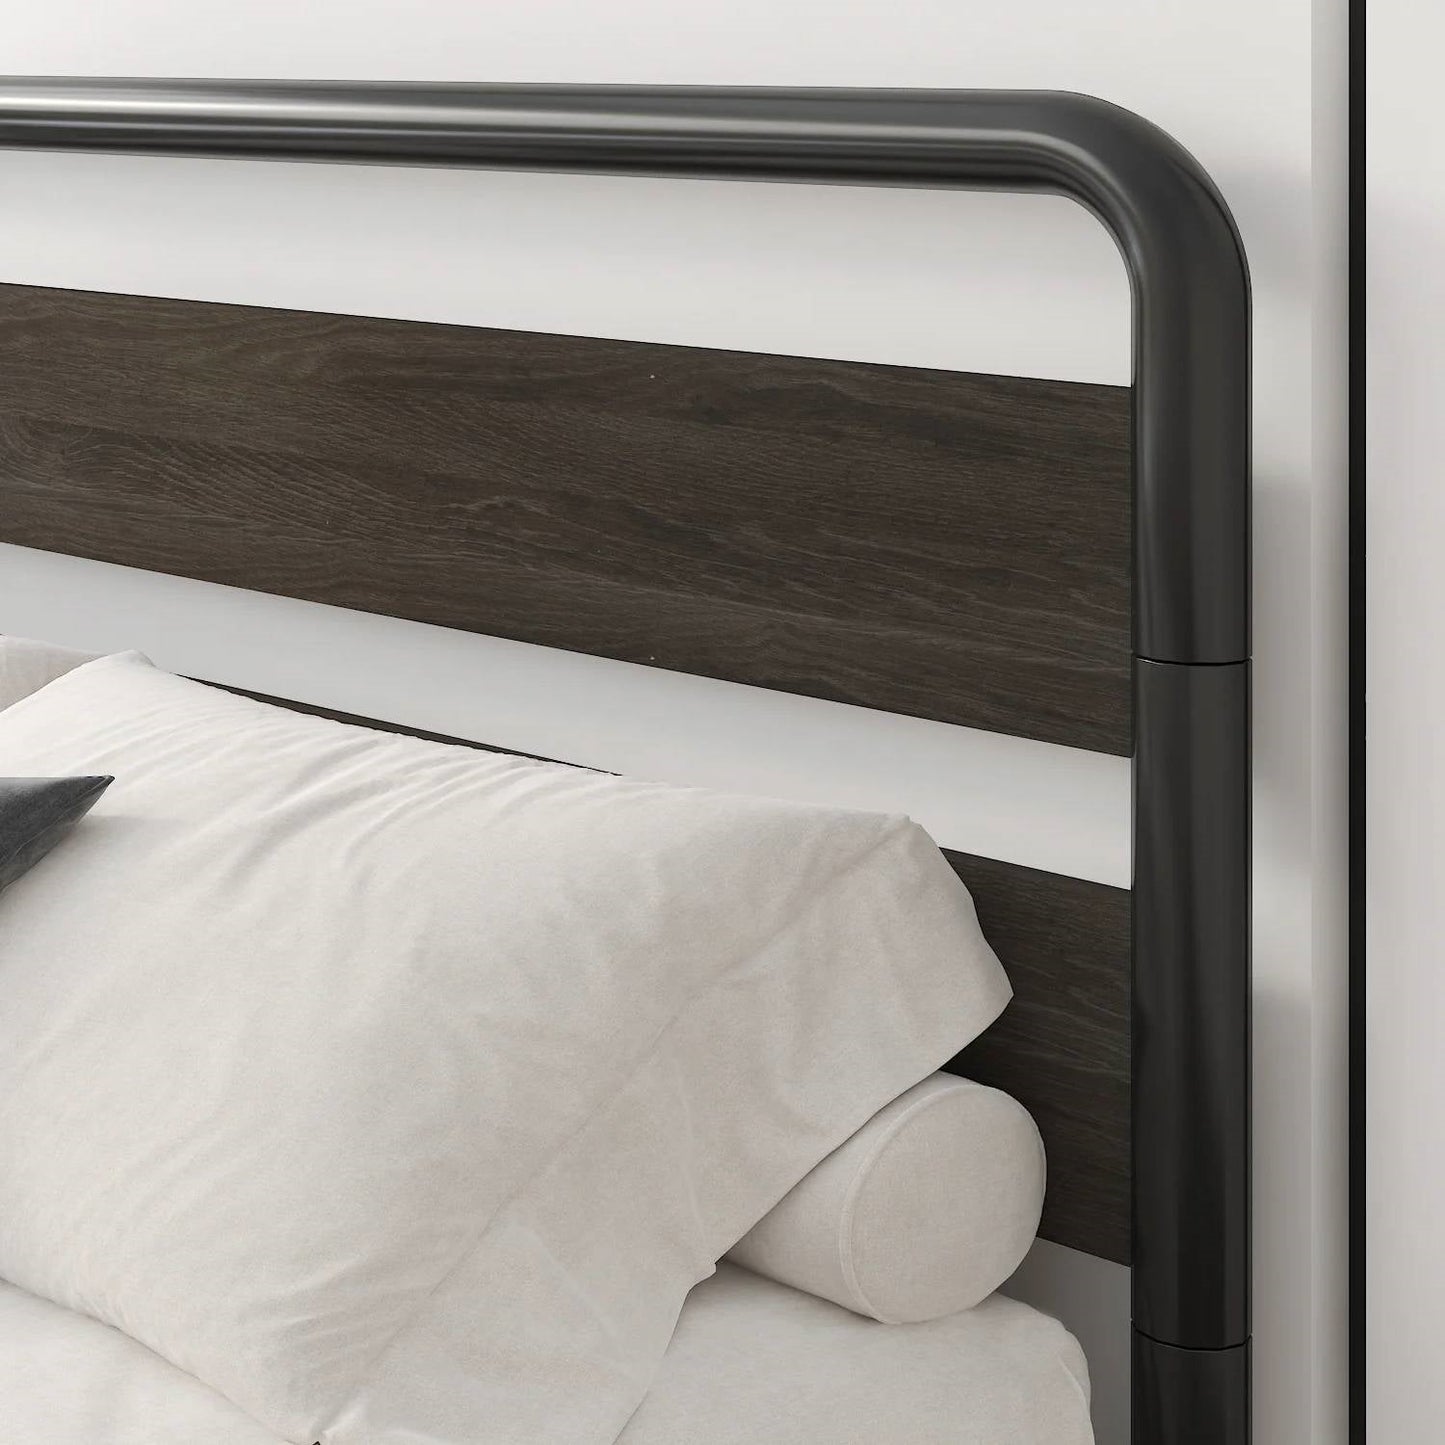 Bedroom > Bed Frames > Platform Beds - Full Heavy Duty Round Metal Frame Platform Bed With Black Wood Panel Headboard